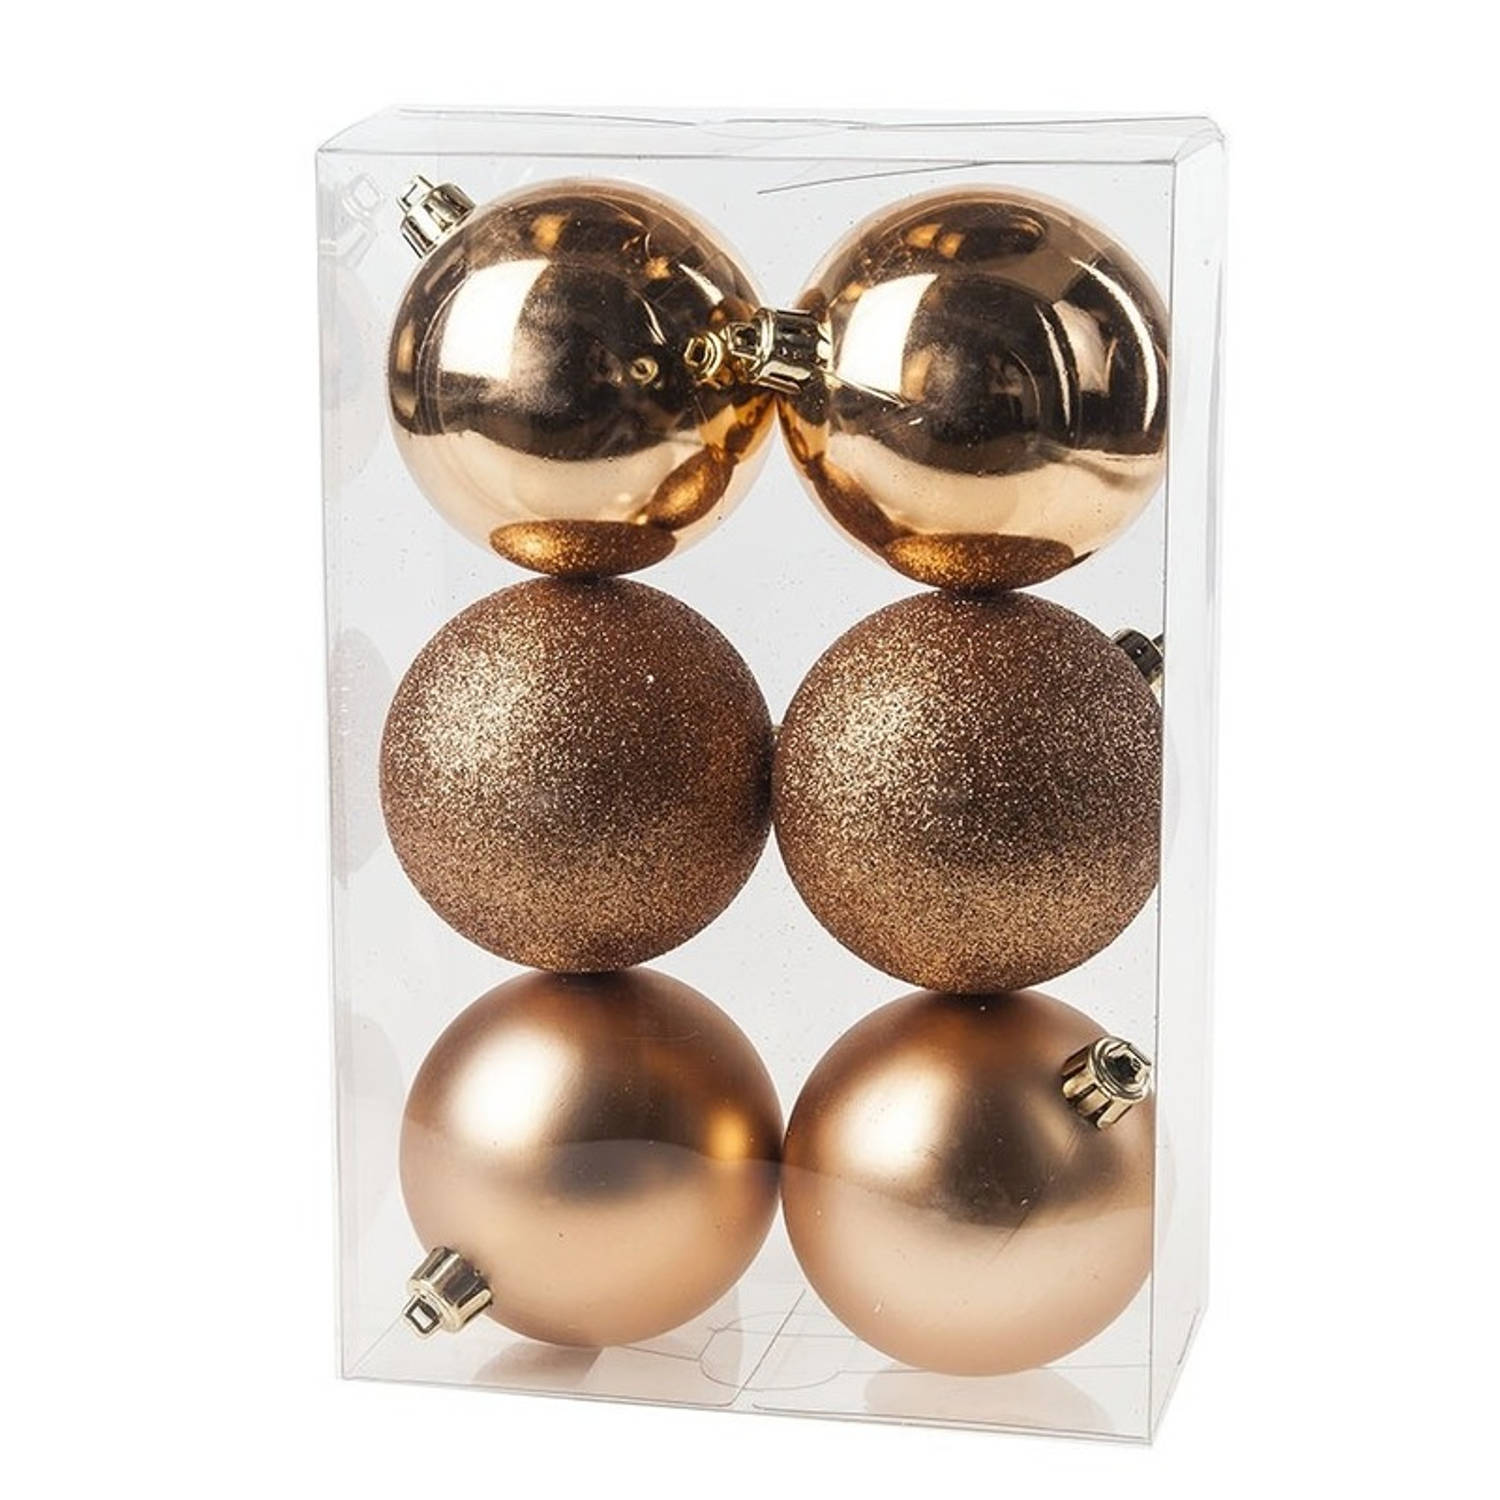 6x Kunststof Kerstballen Glanzend-mat Koperkleurig 8 Cm Kerstboom Versiering-decoratie Kerstbal